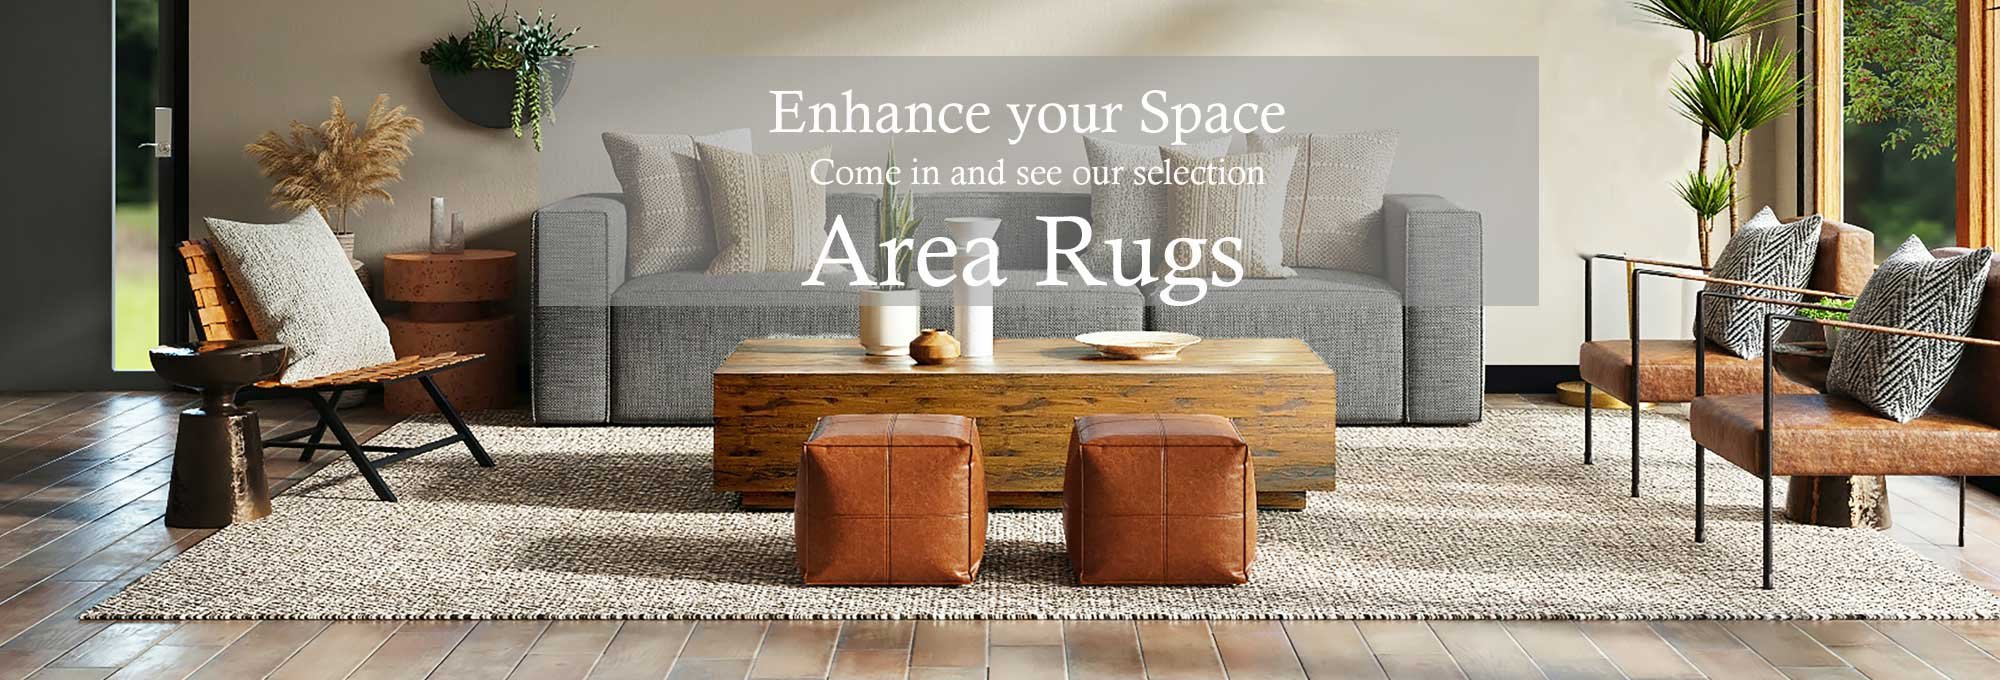 Nicks-area-rugs